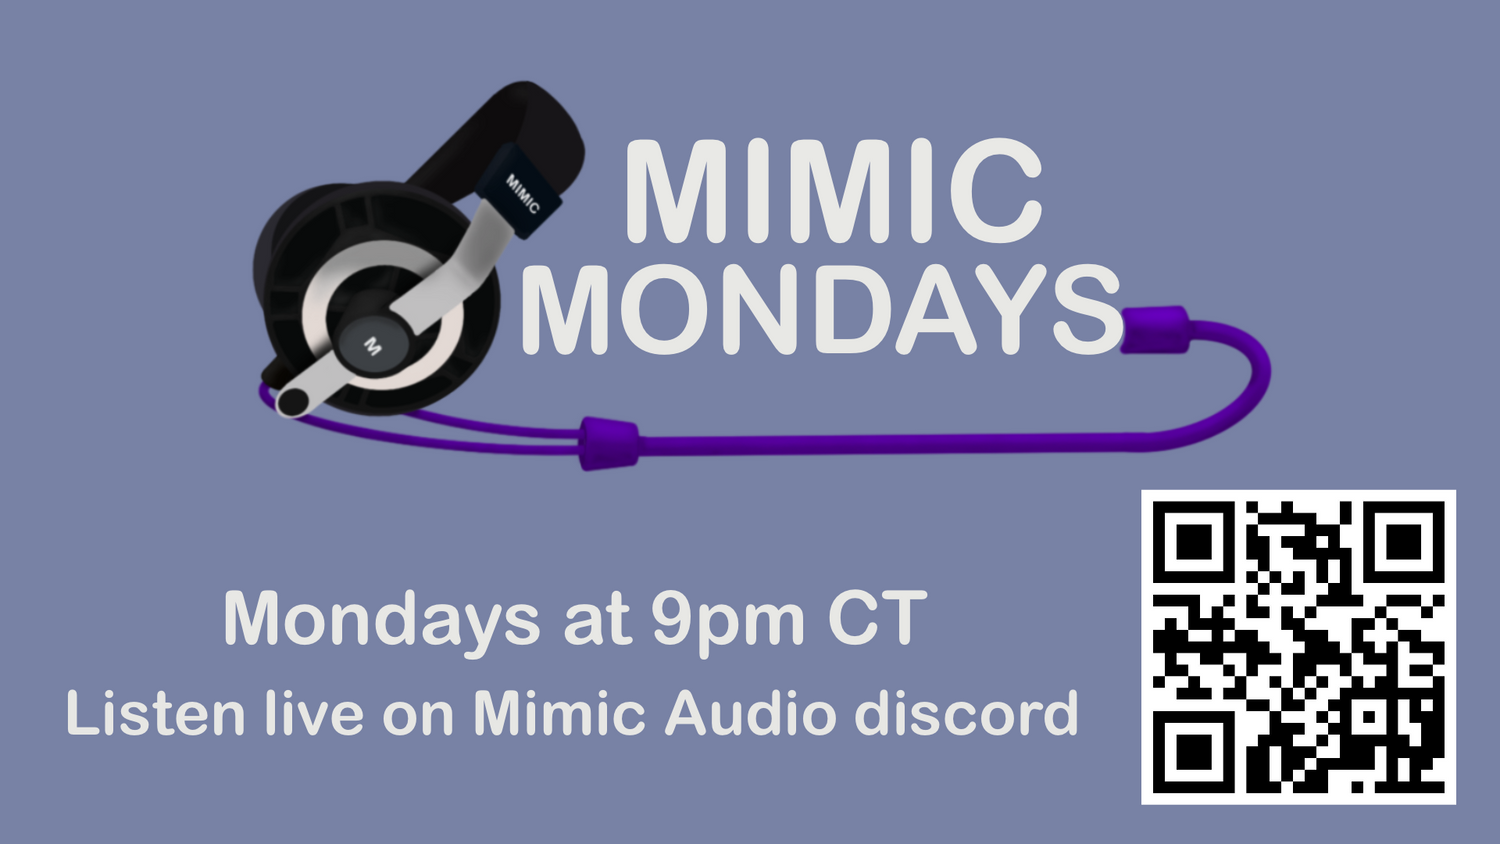 Mimic Mondays Episode 4 is now live!